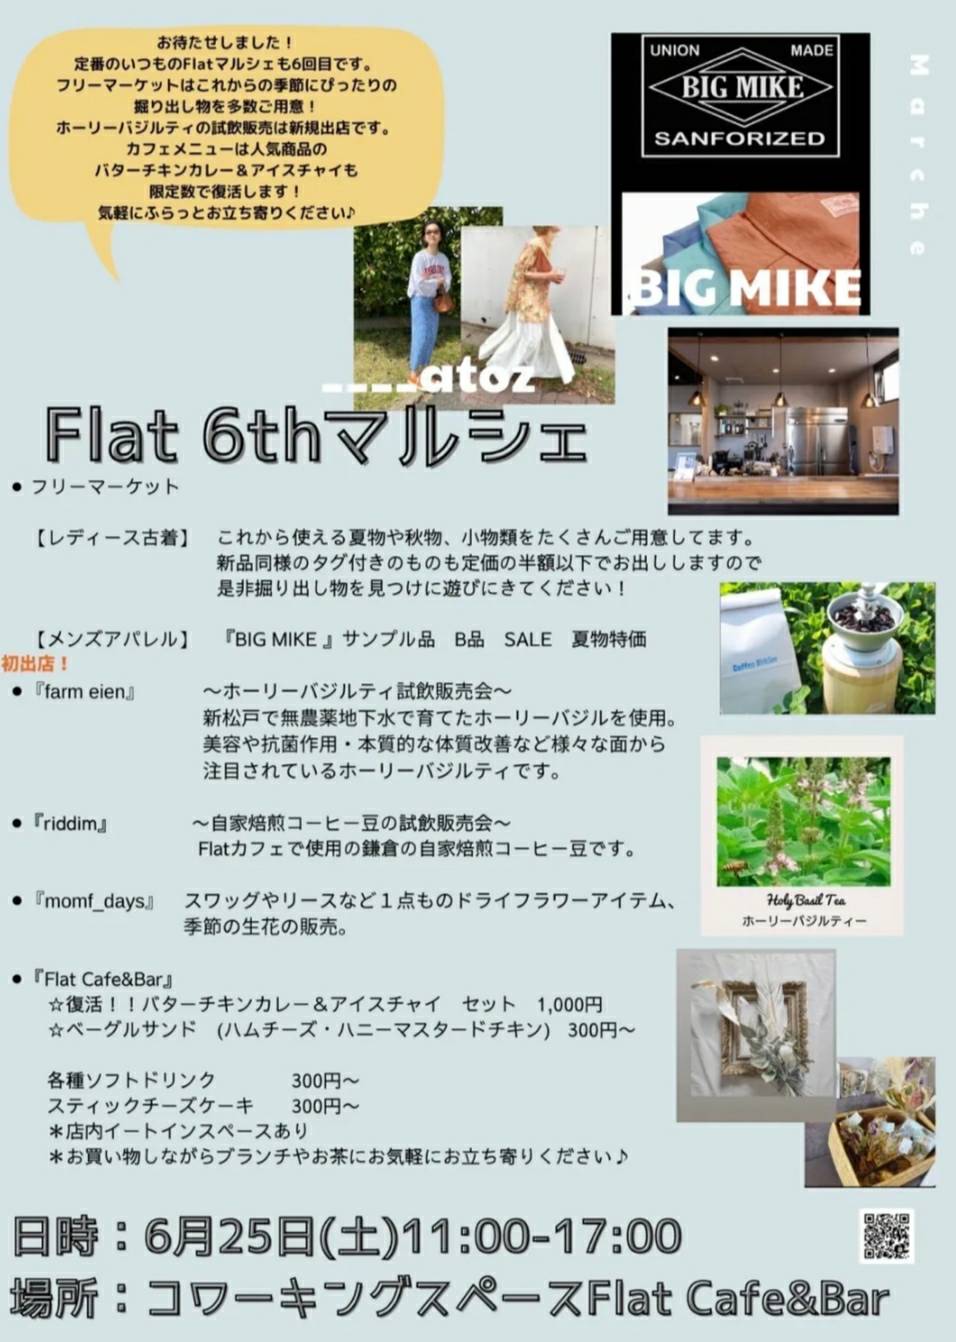 新松戸Flat 6th マルシェフリーマーケットカフェメニューメンズレディース